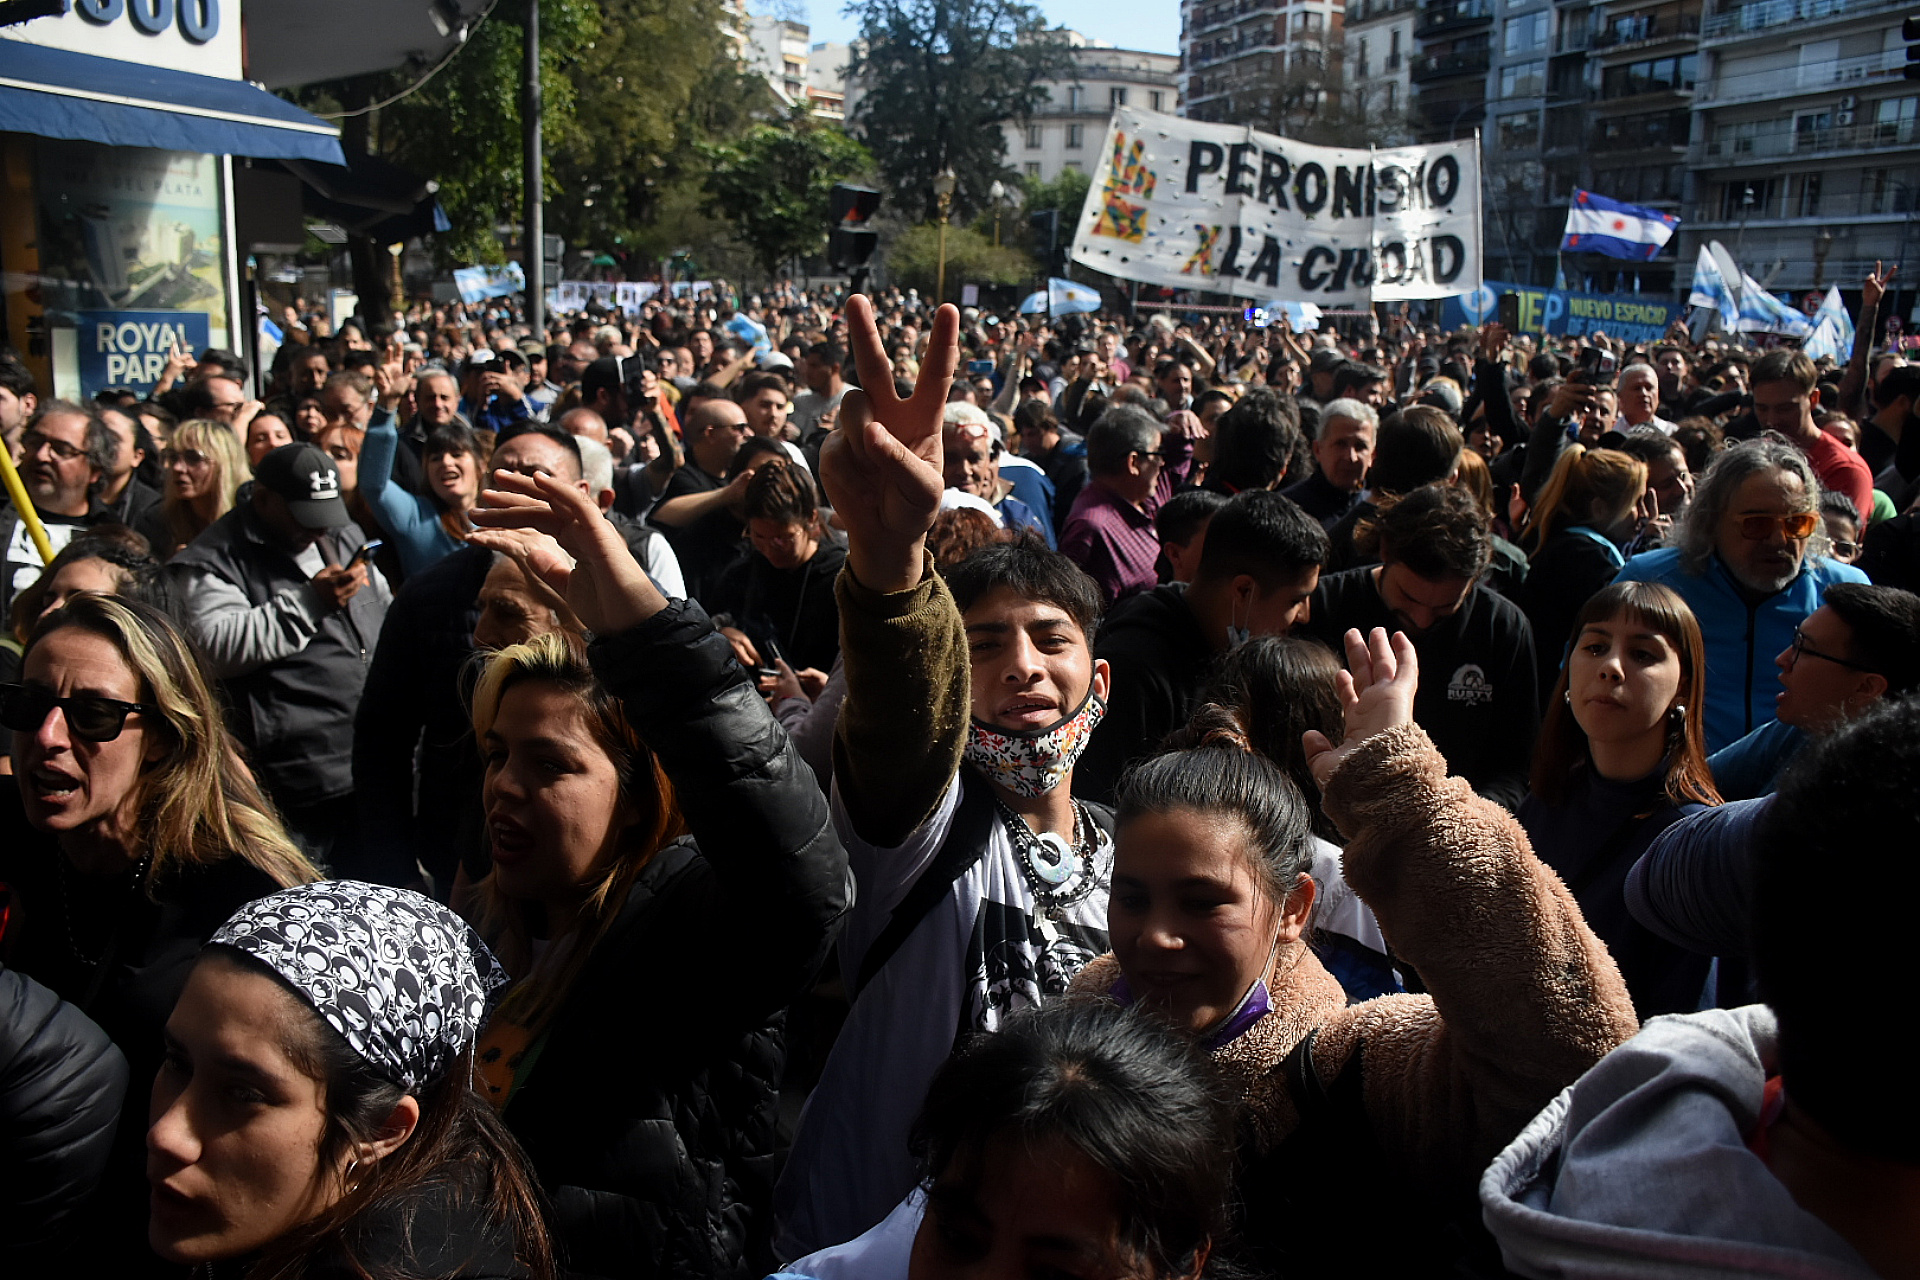 Los adherentes y militantes que apoyan a Cristina Kirchner fueron agolpándose durante la jornada alrededor de las calles de la Plaza Vicente López y Planes, que estaba cerrada al público